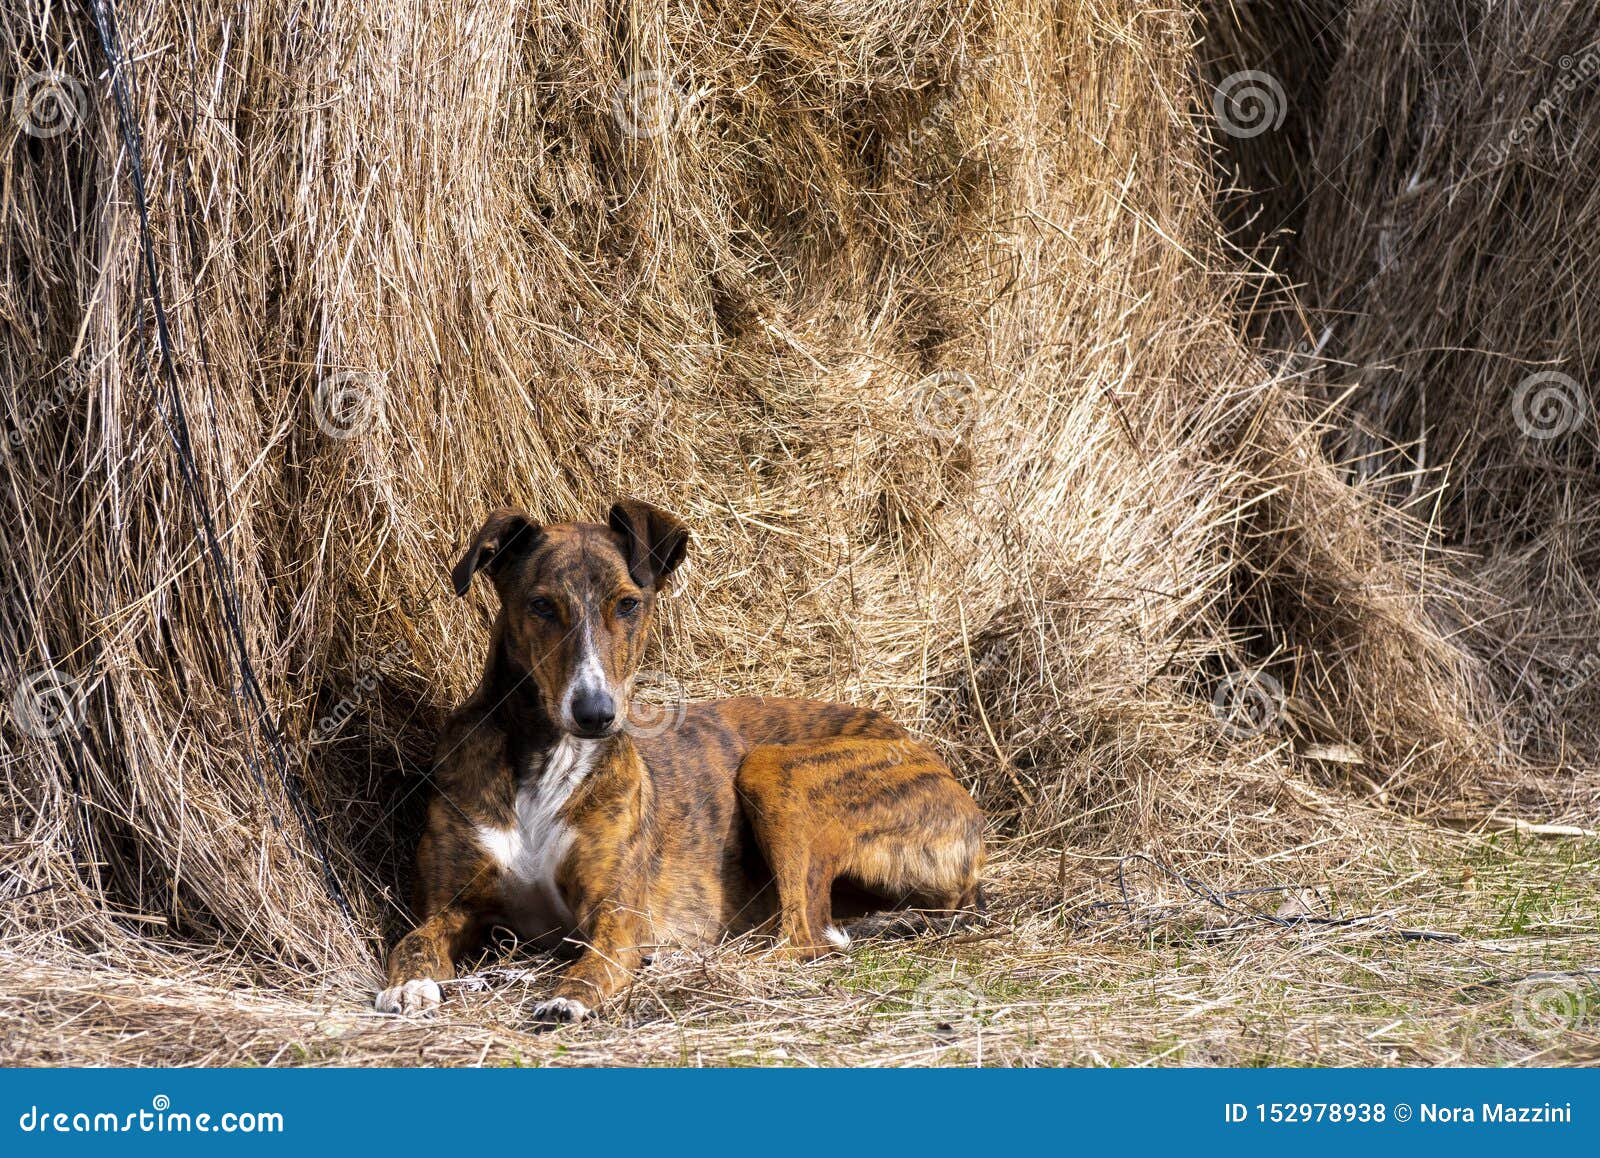 greyhound dog lying on a straw bale